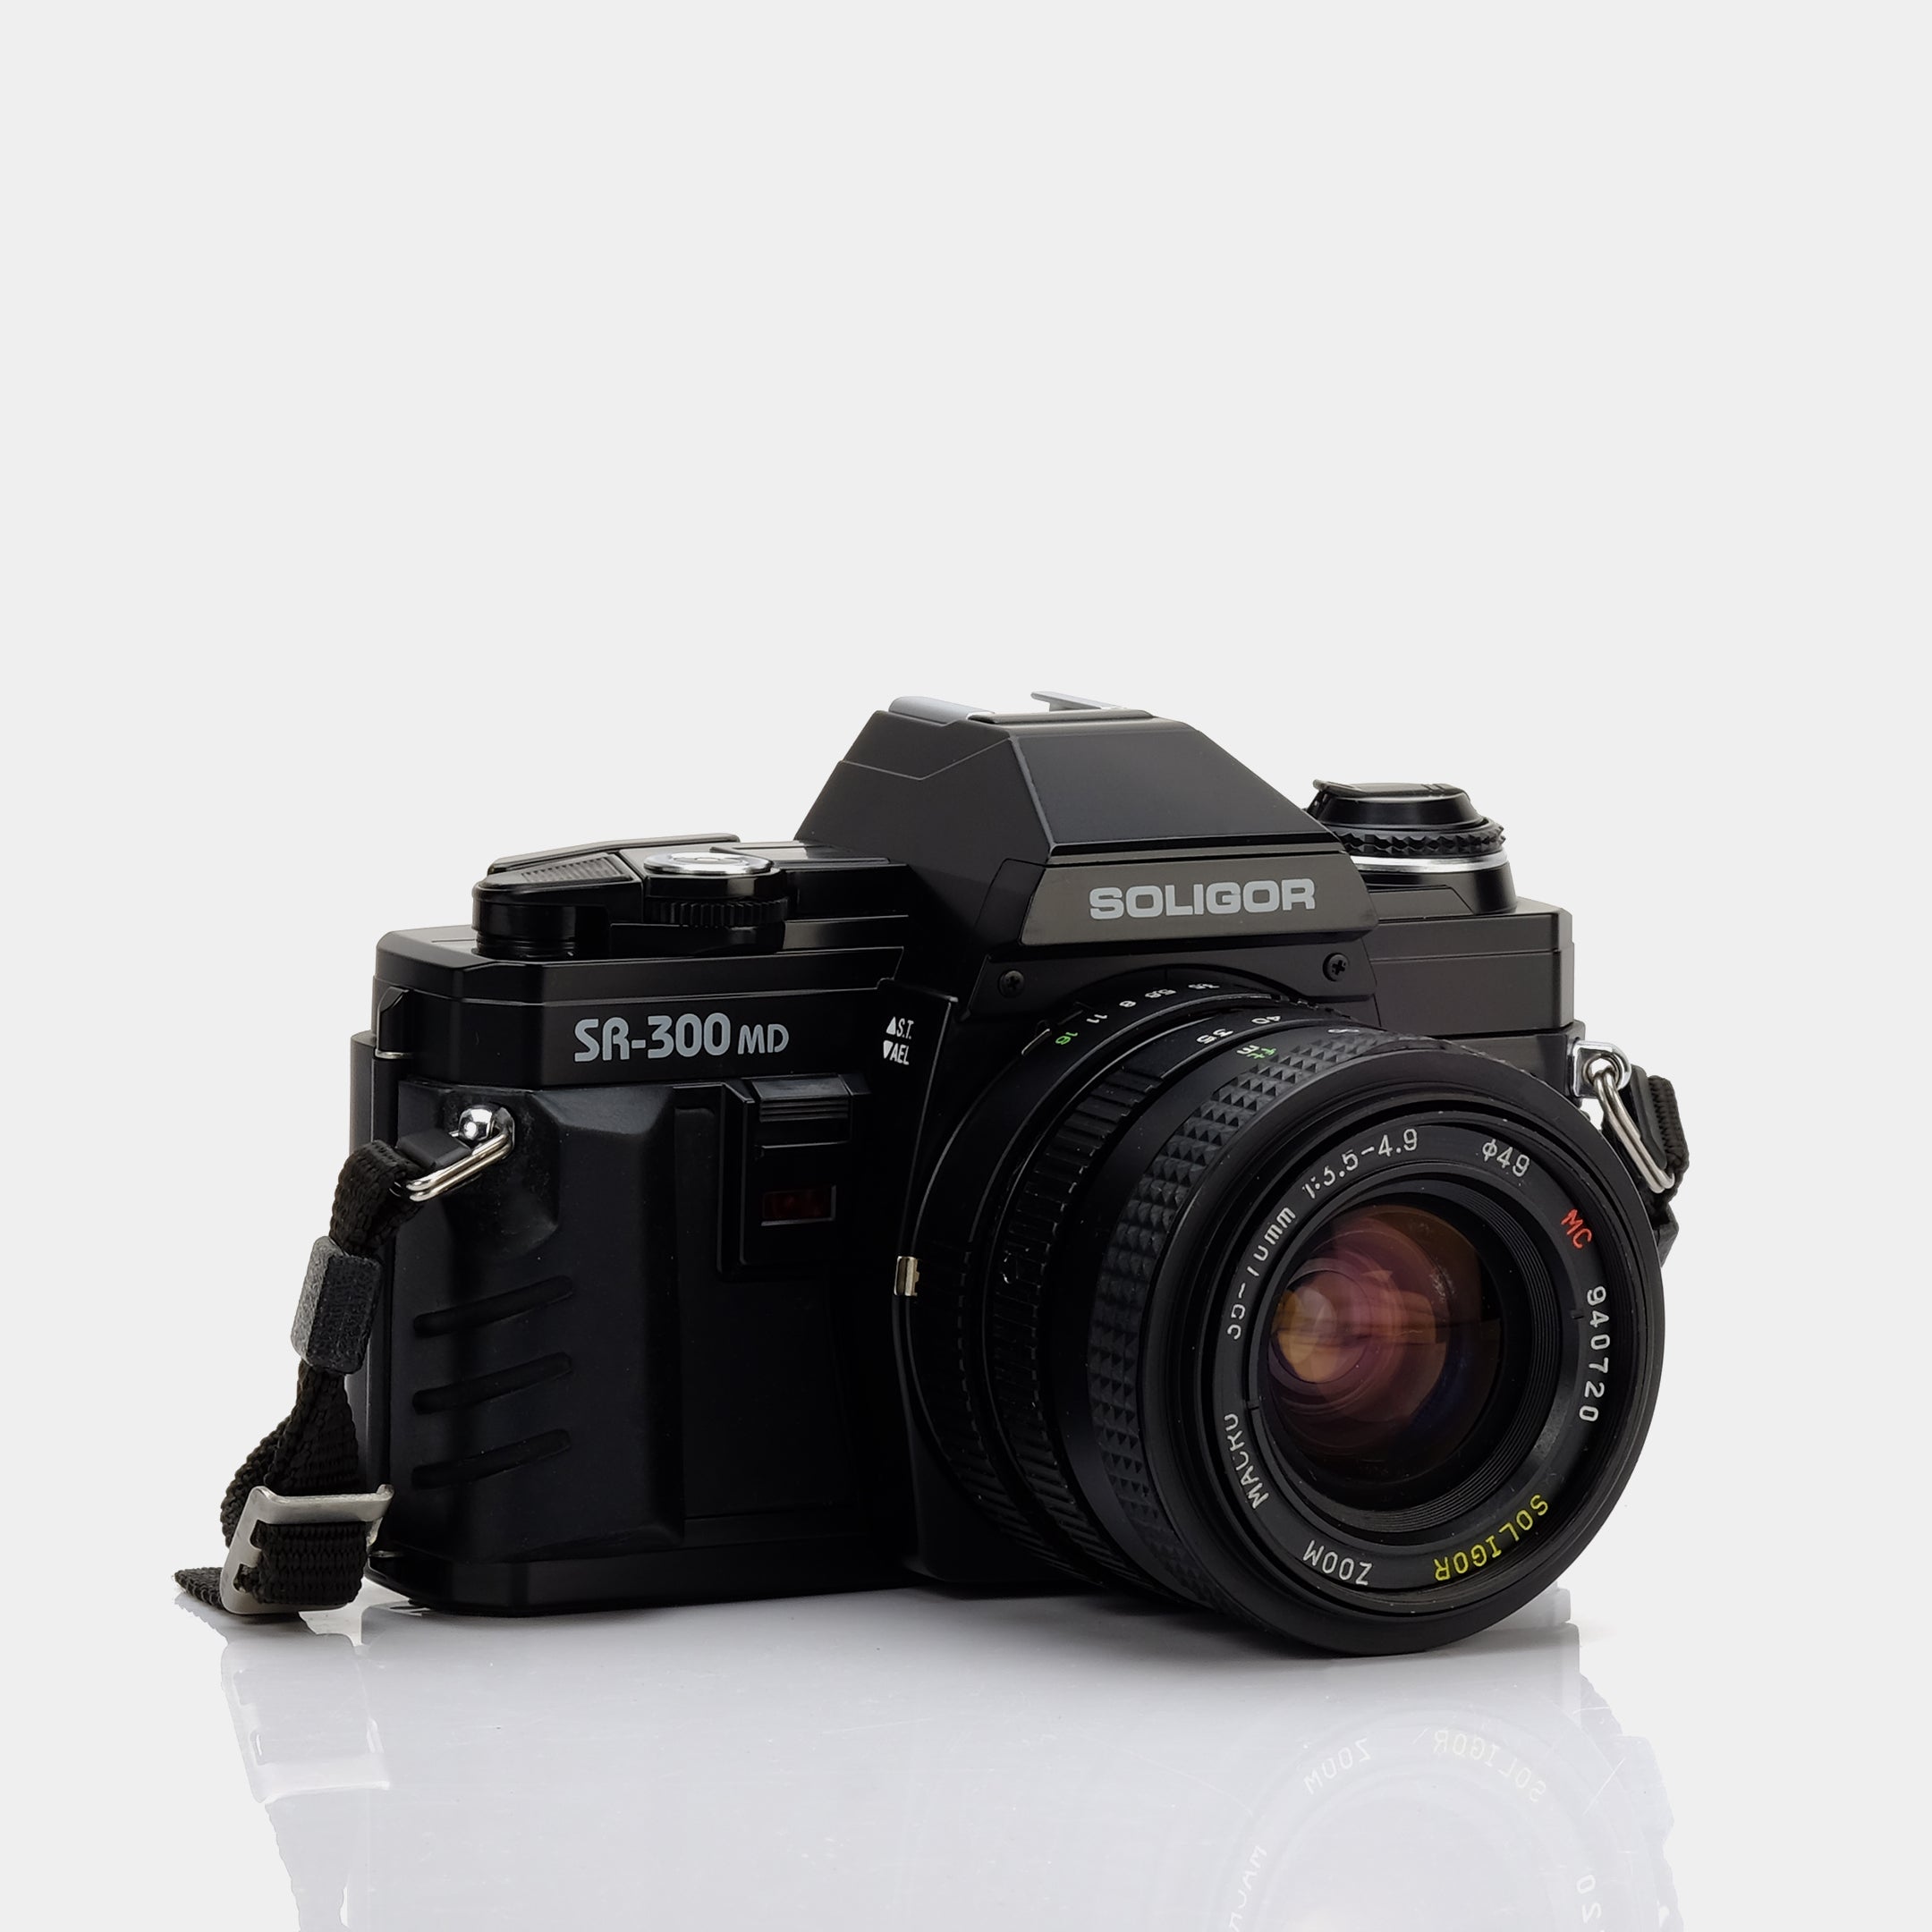 Soligor SR-300 MD 35mm Film Camera